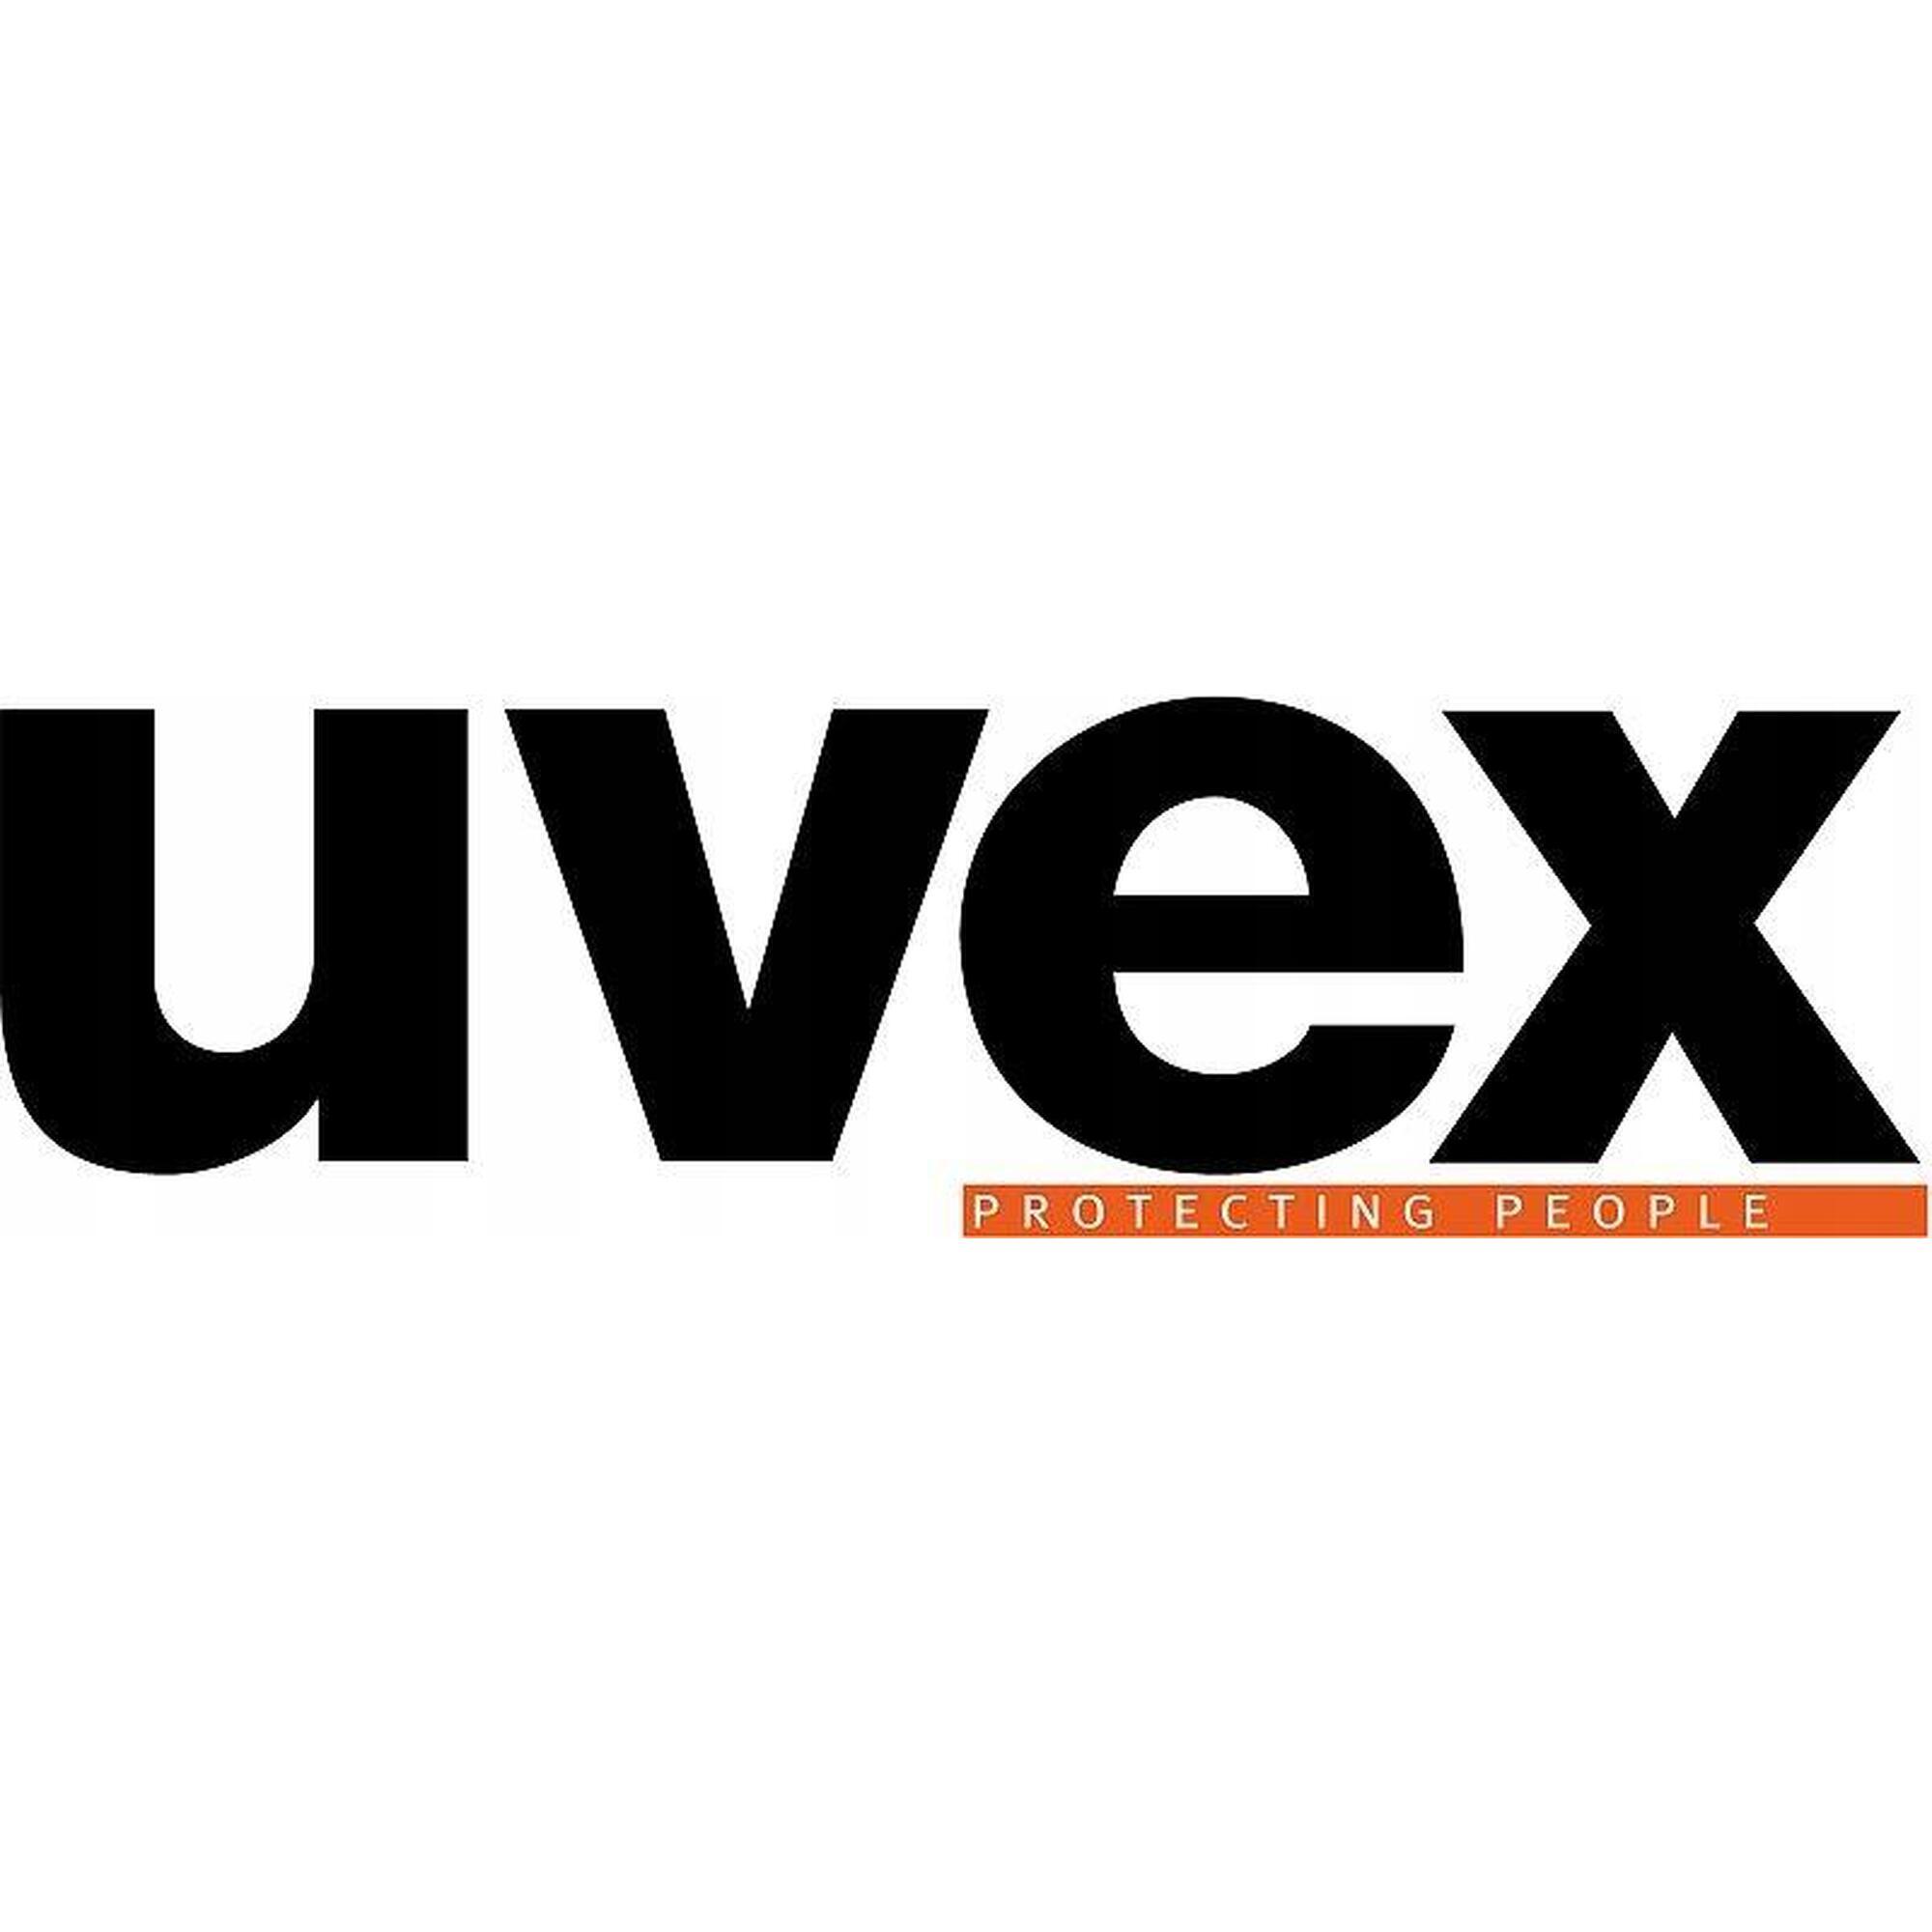 Kask rowerowy UVEX I-vo CC